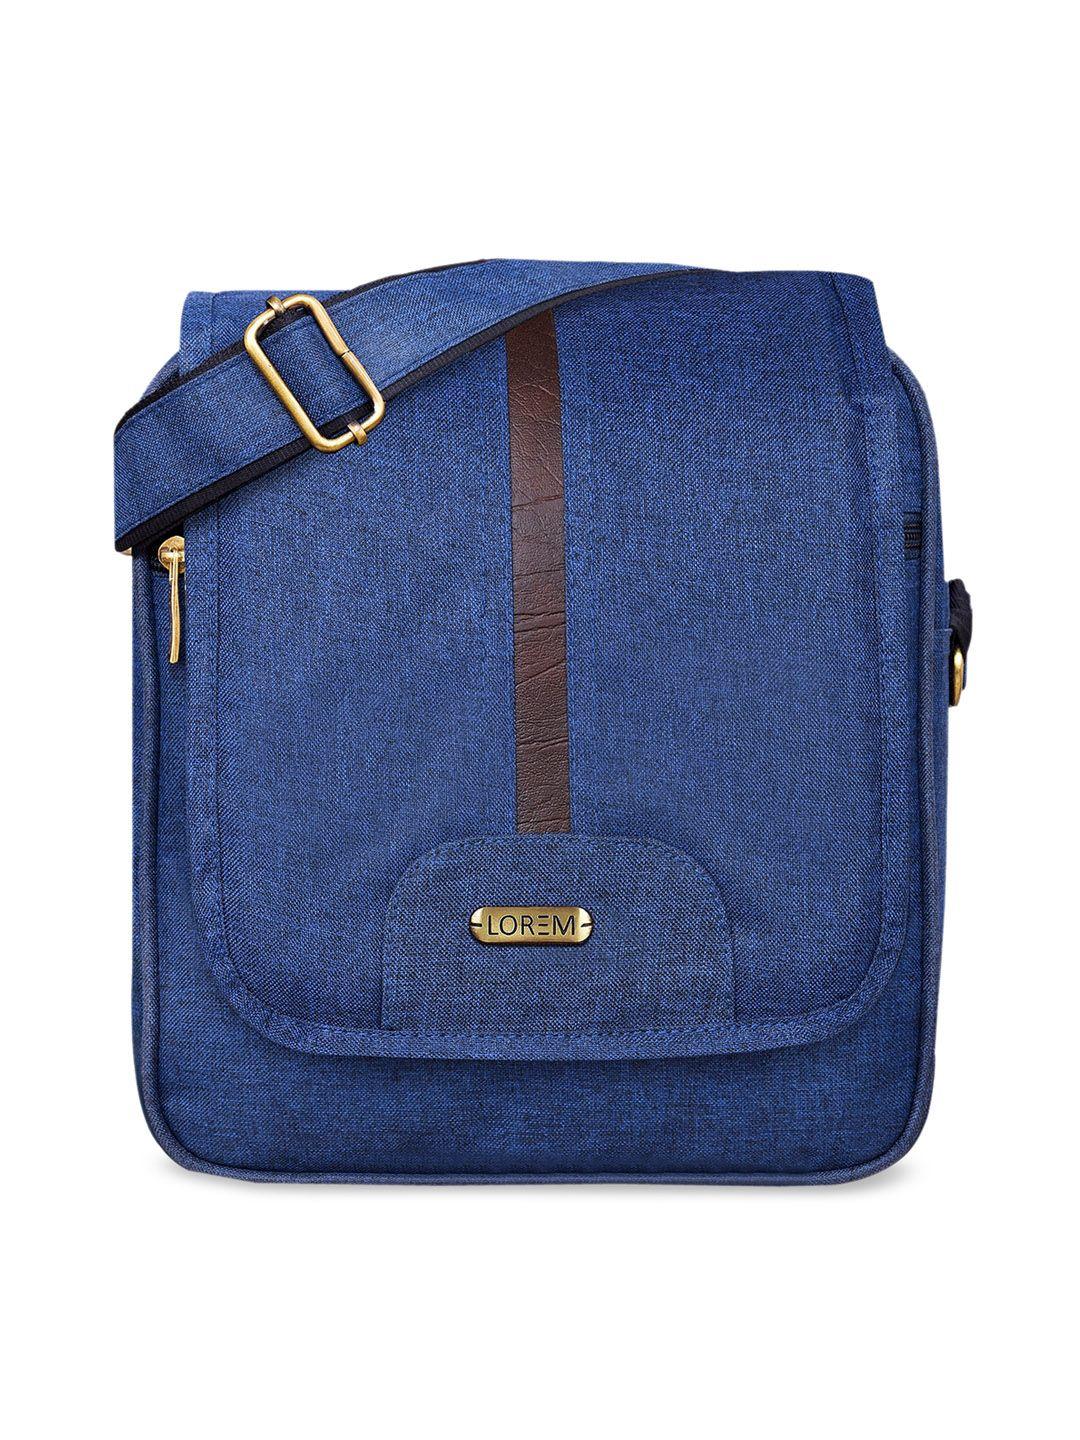 lorem blue structured sling bag